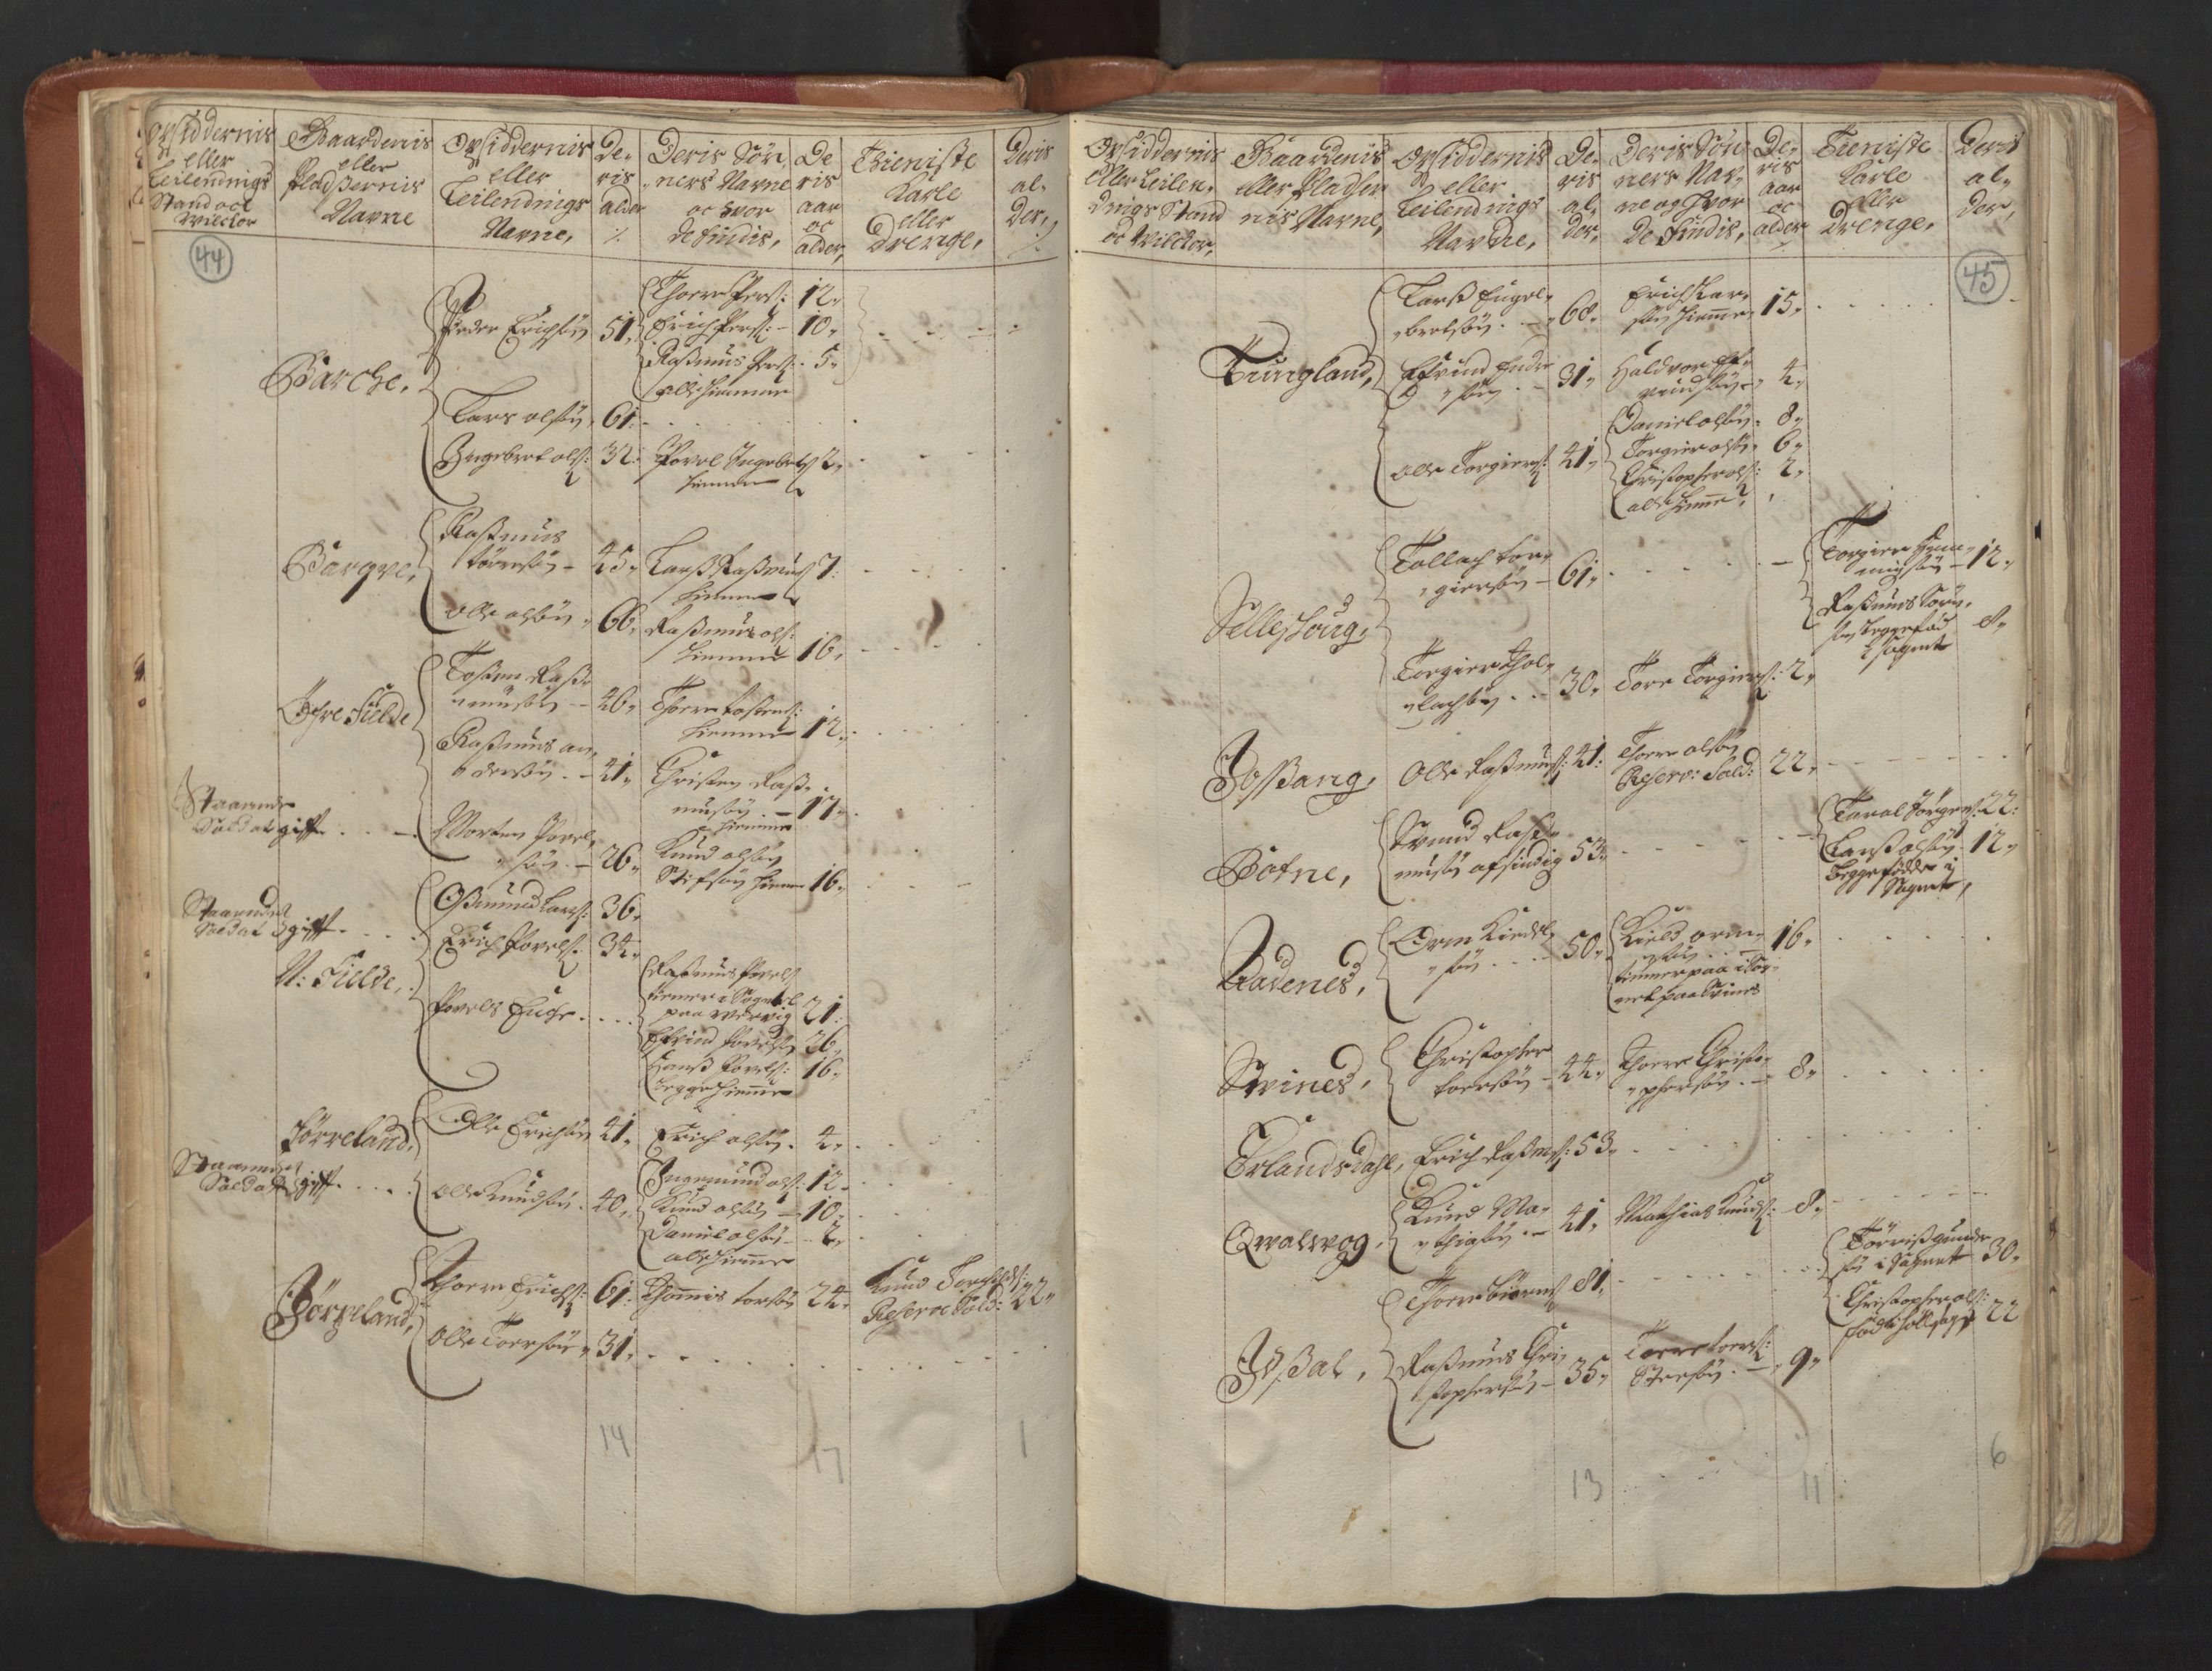 RA, Manntallet 1701, nr. 5: Ryfylke fogderi, 1701, s. 44-45